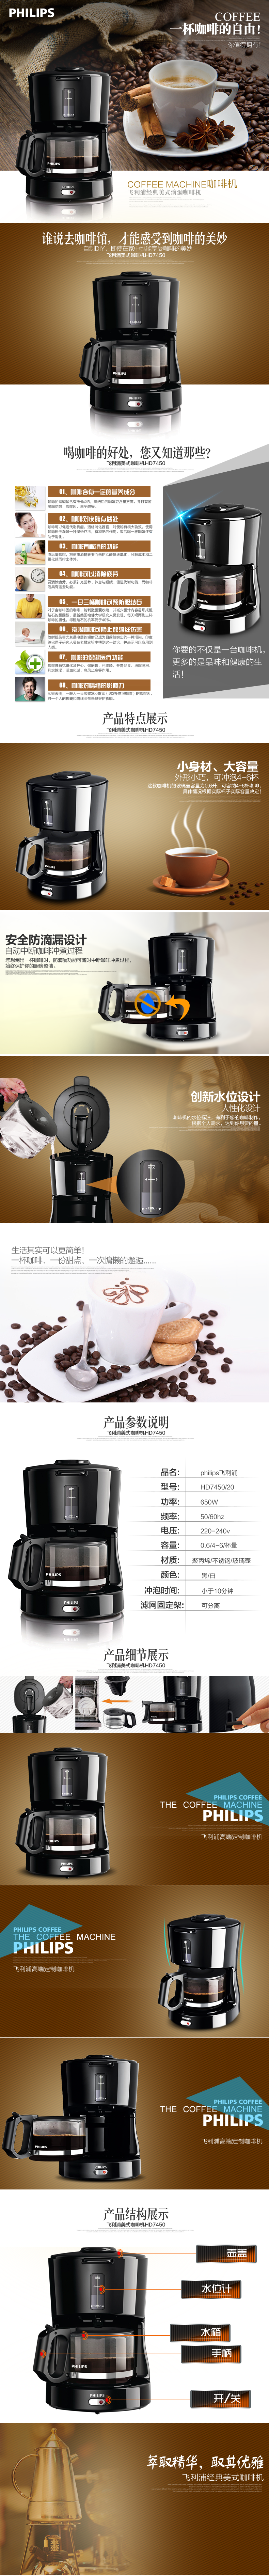 清新简约风咖啡机详情页PSD模版